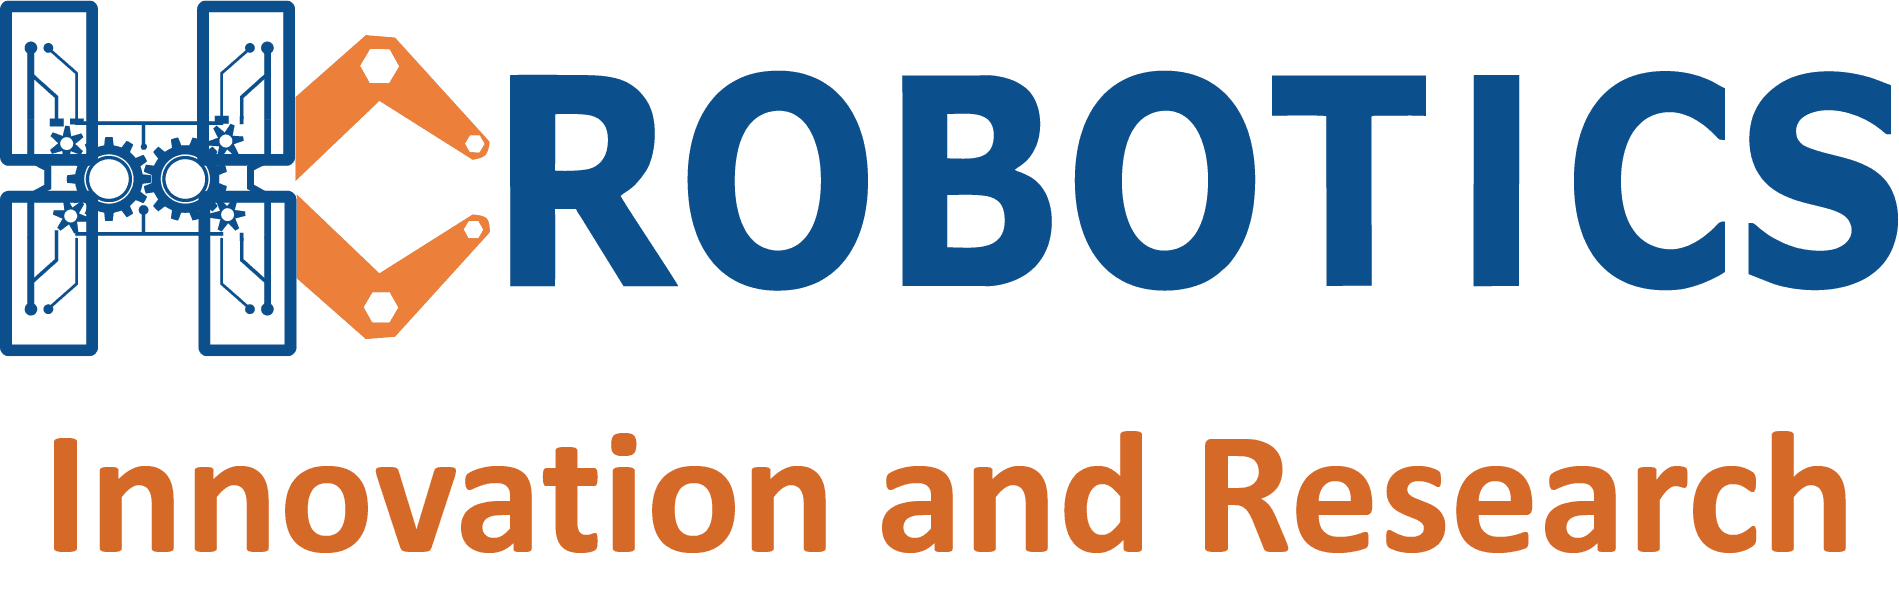 HC Robotics-Drone Division